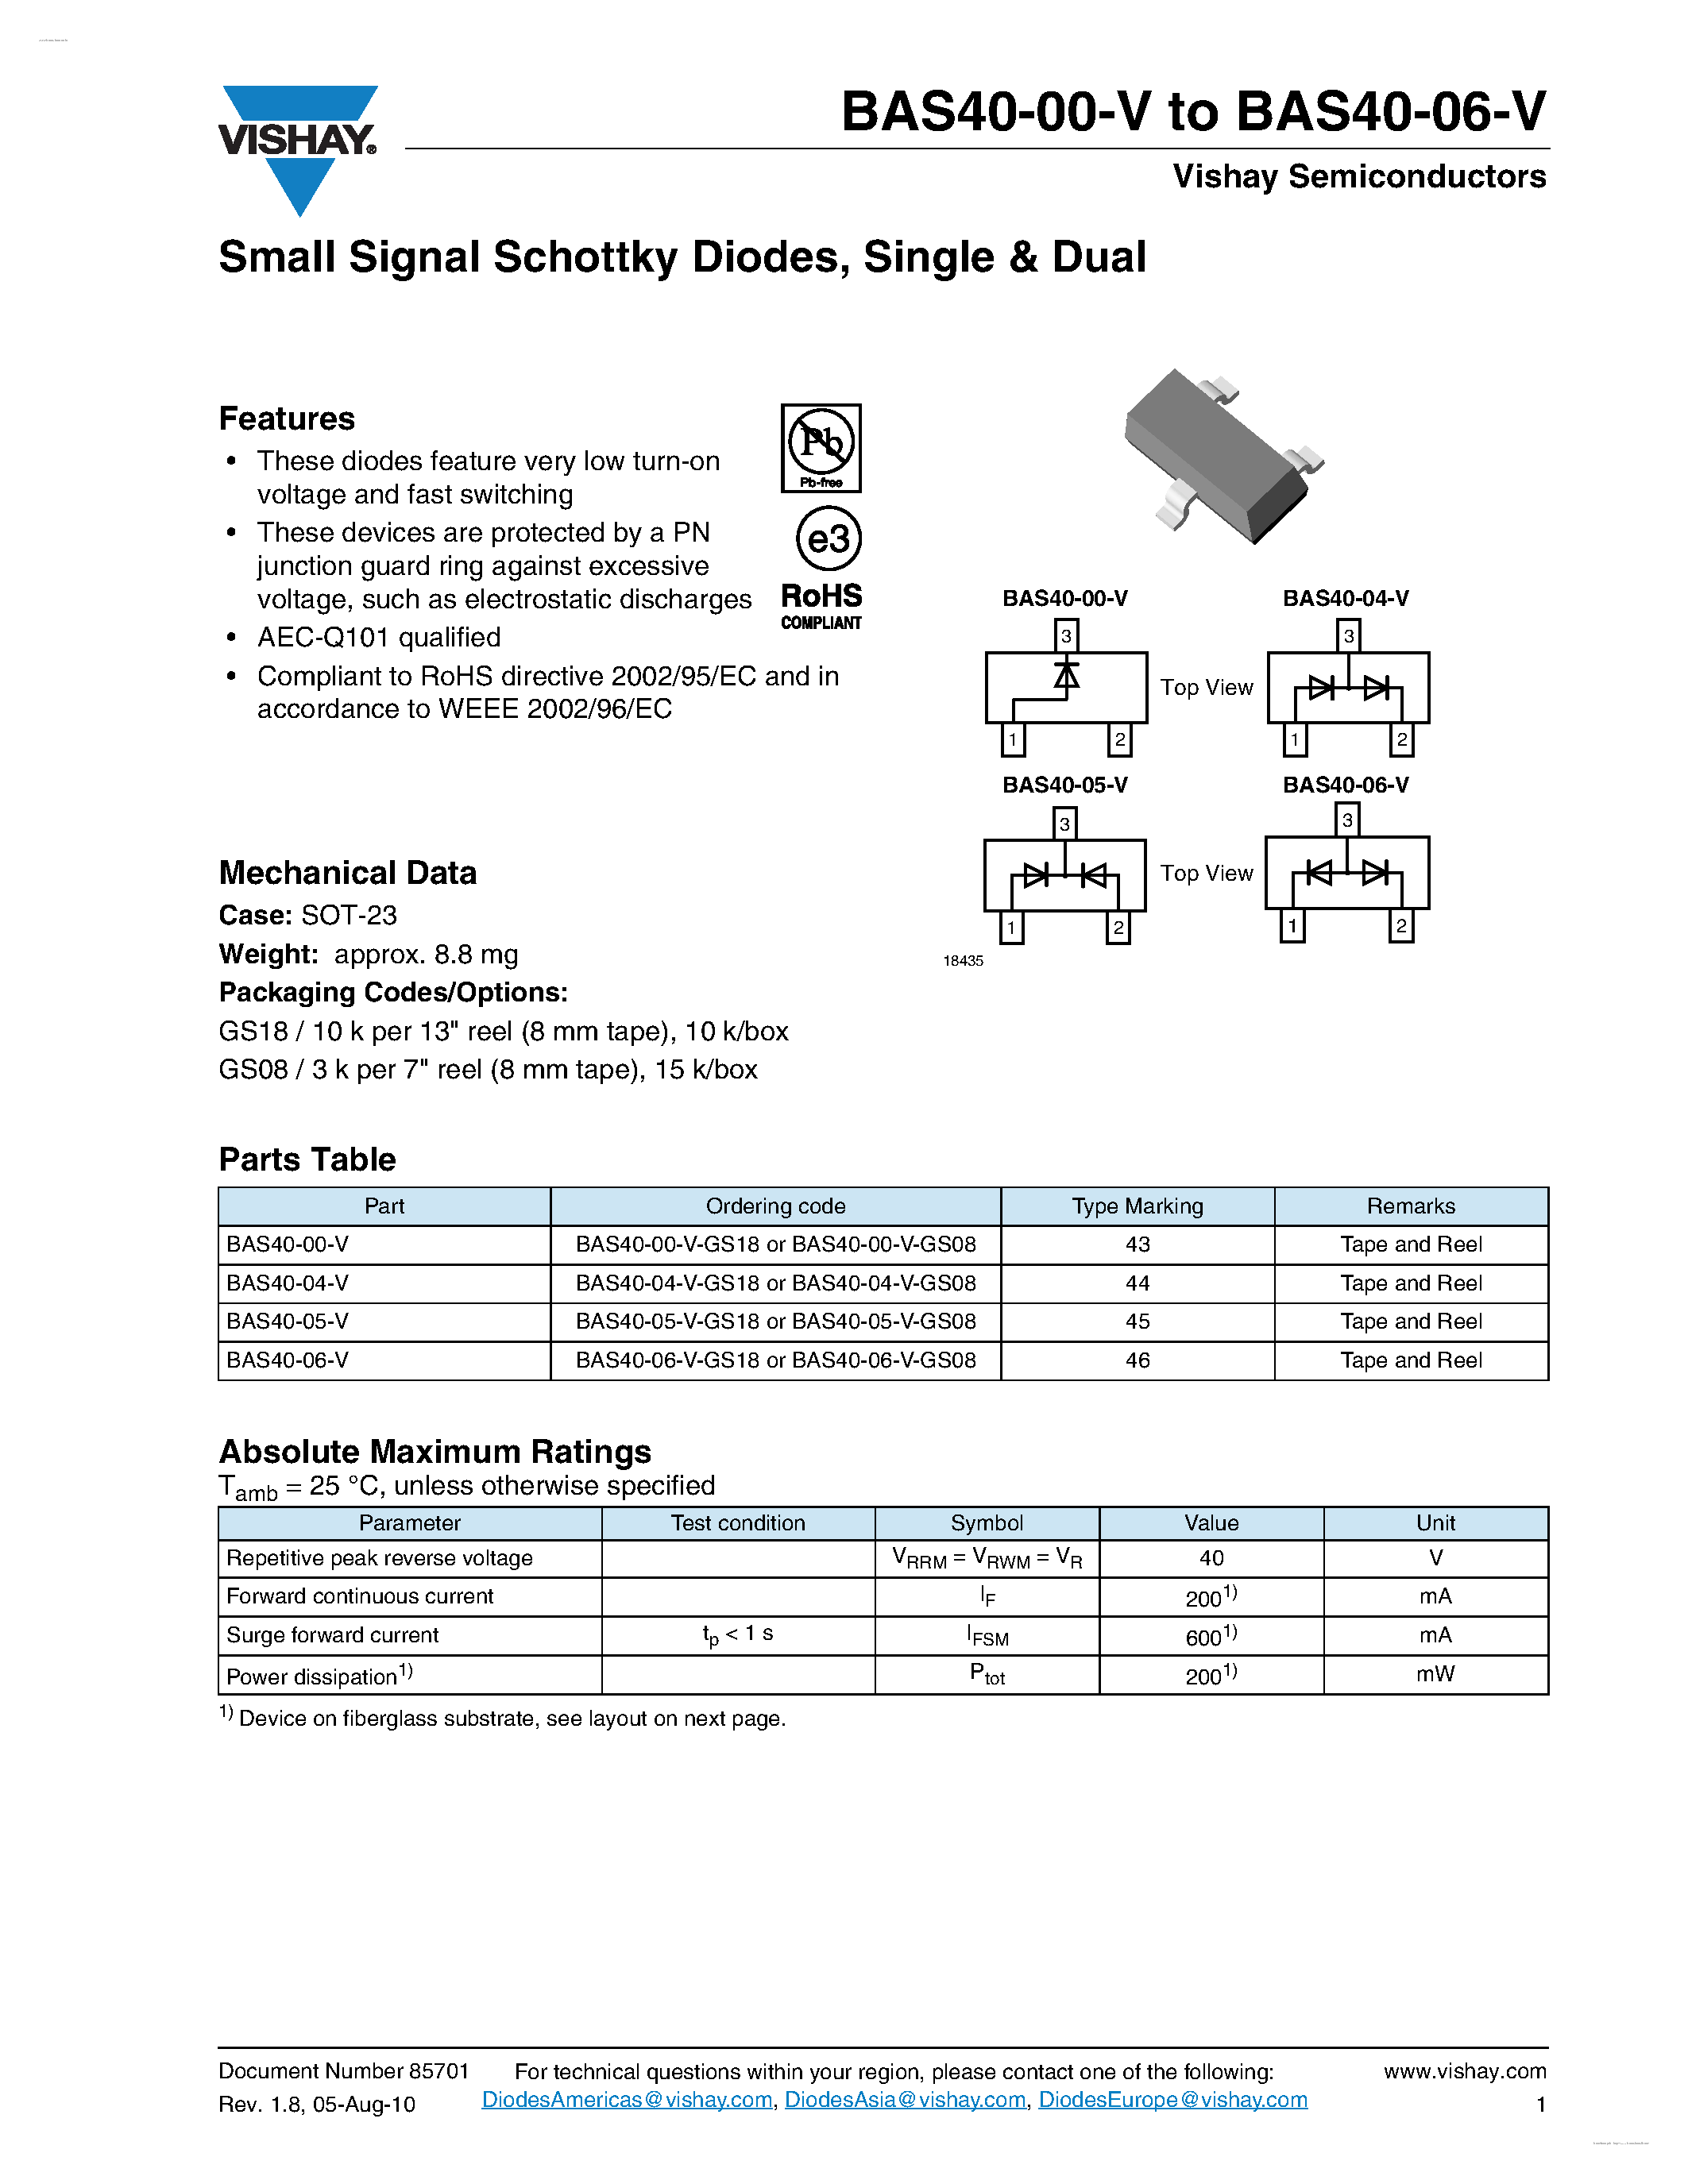 Даташит BAS40-00-V - (BAS40-00-V - BAS40-06-V) Small Signal Schottky Diodes страница 1